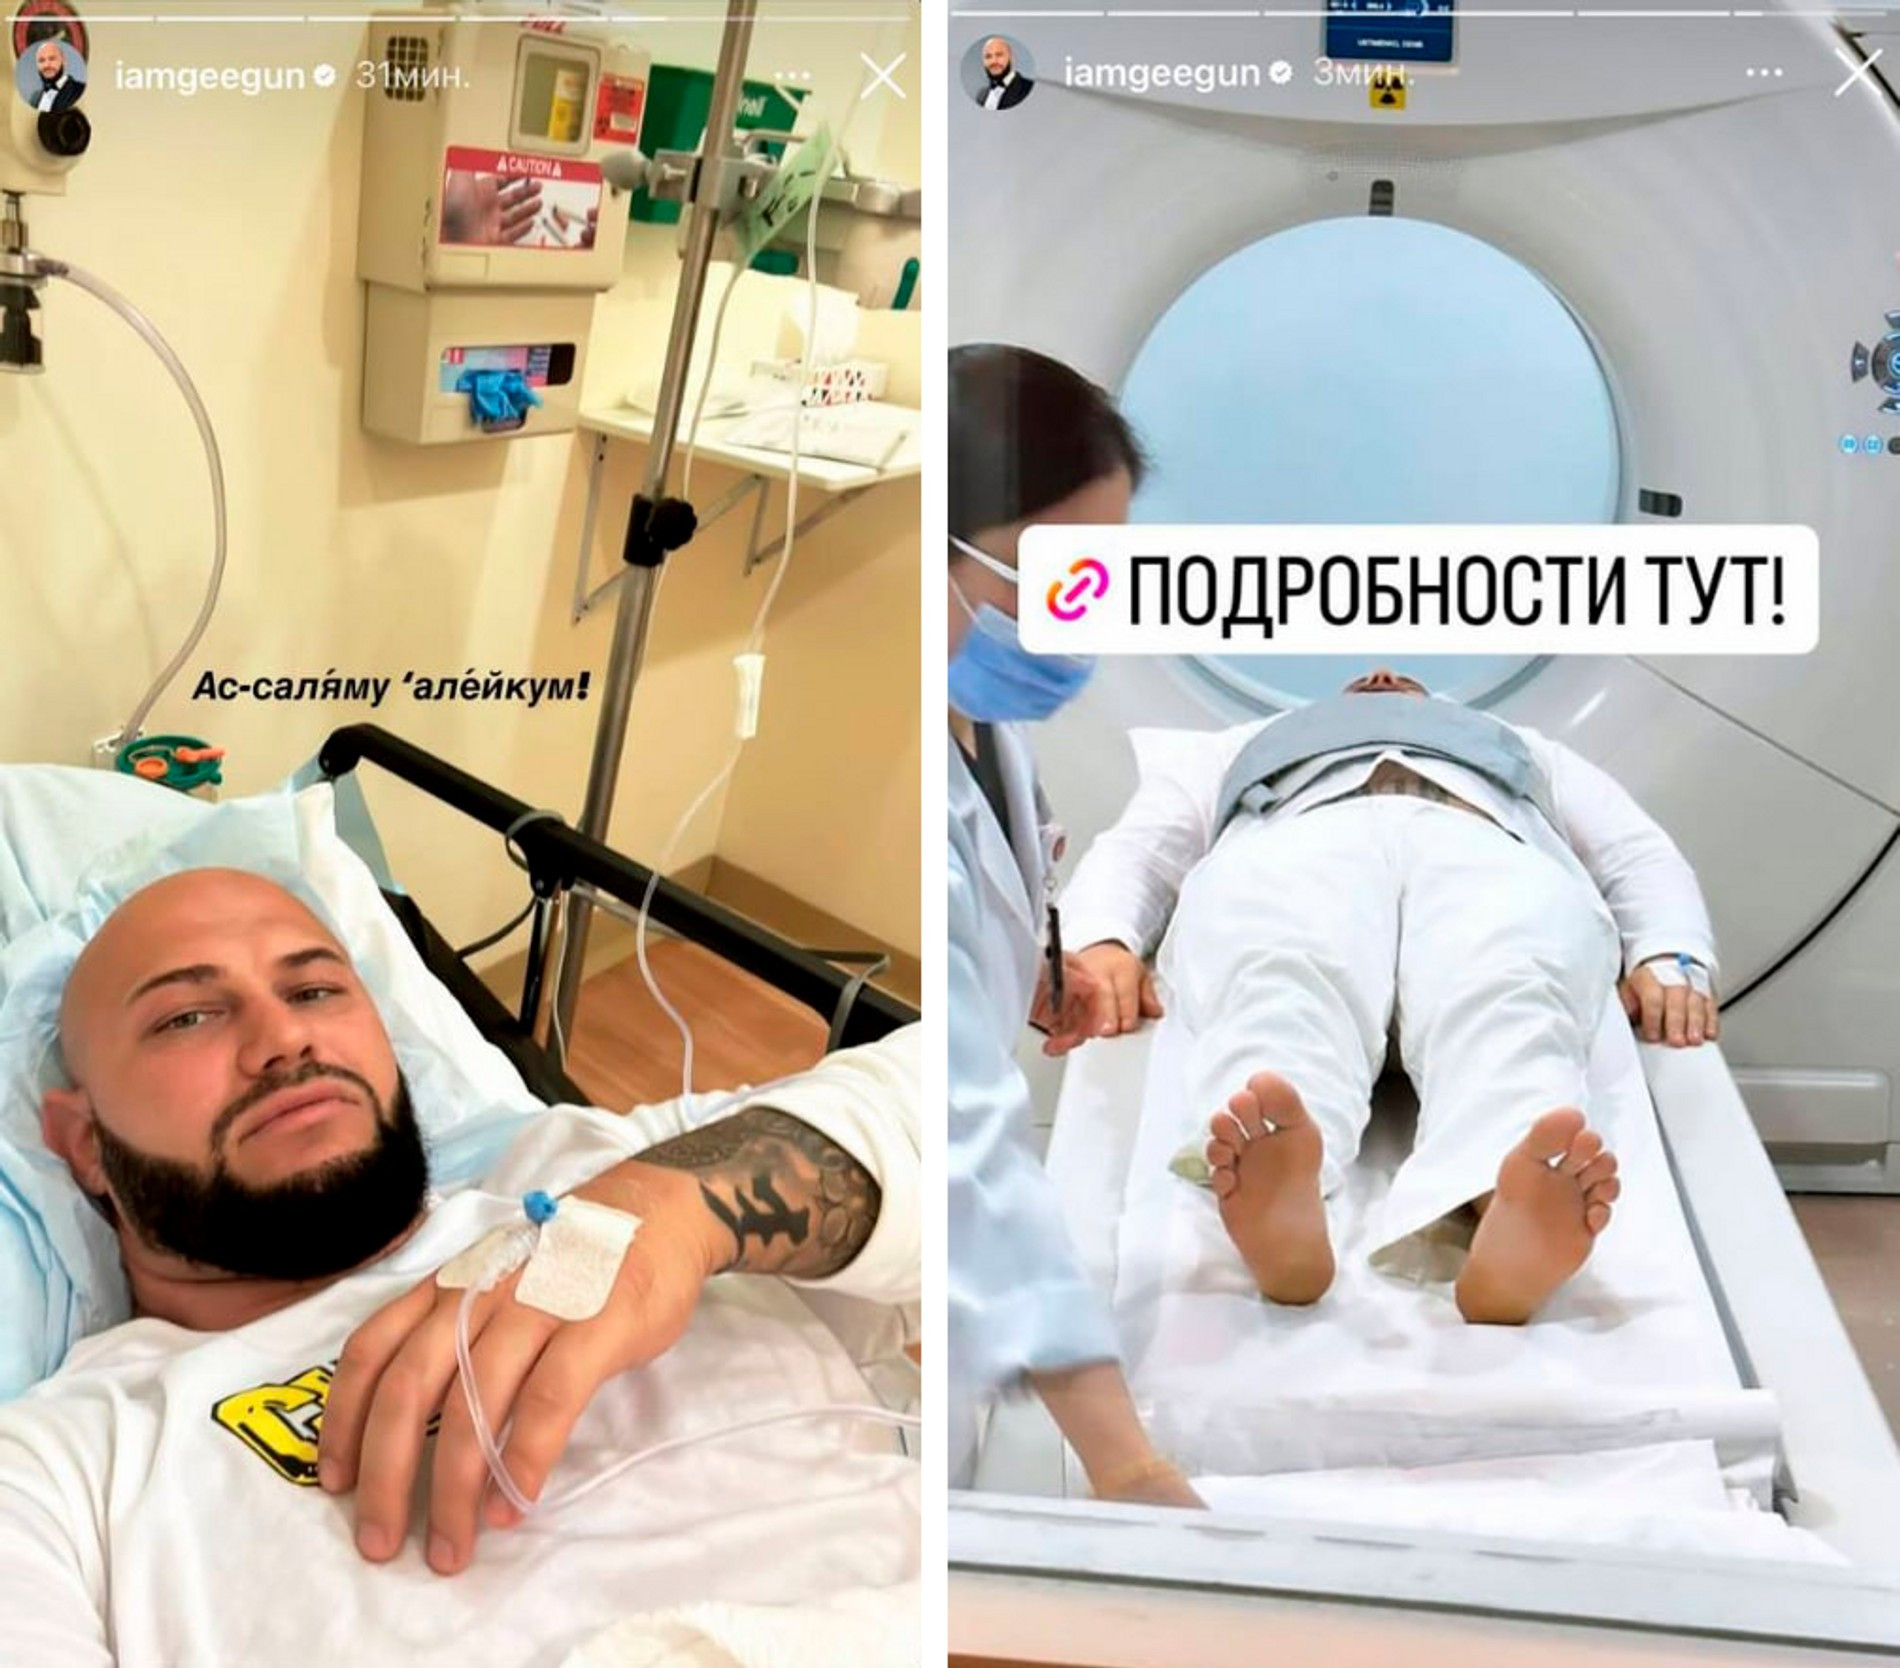 Джиган попал в больницу
Фото: Инстаграм (запрещен в РФ) Дениса